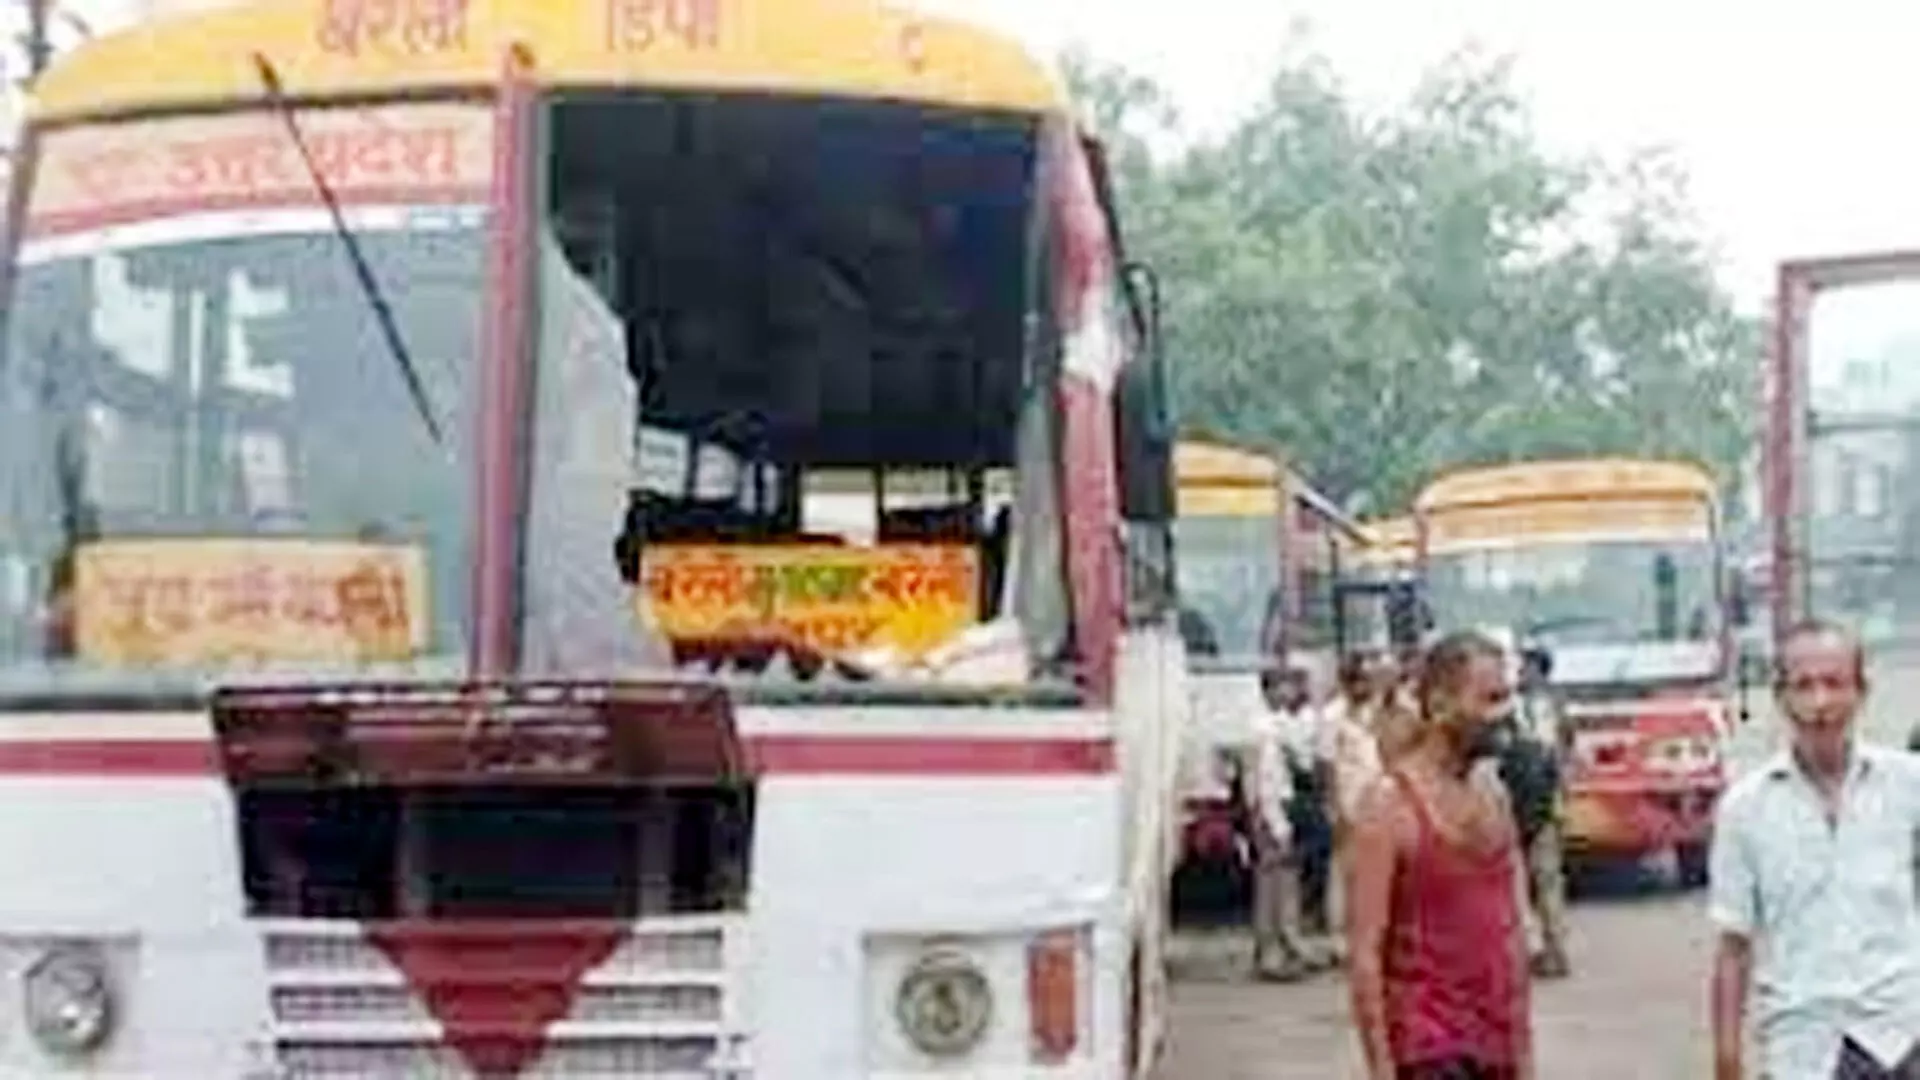 चौपला से बरेली डिपो की रोडवेज बस में सवार हुए यात्री ने परिचालक के साथ मारपीट की